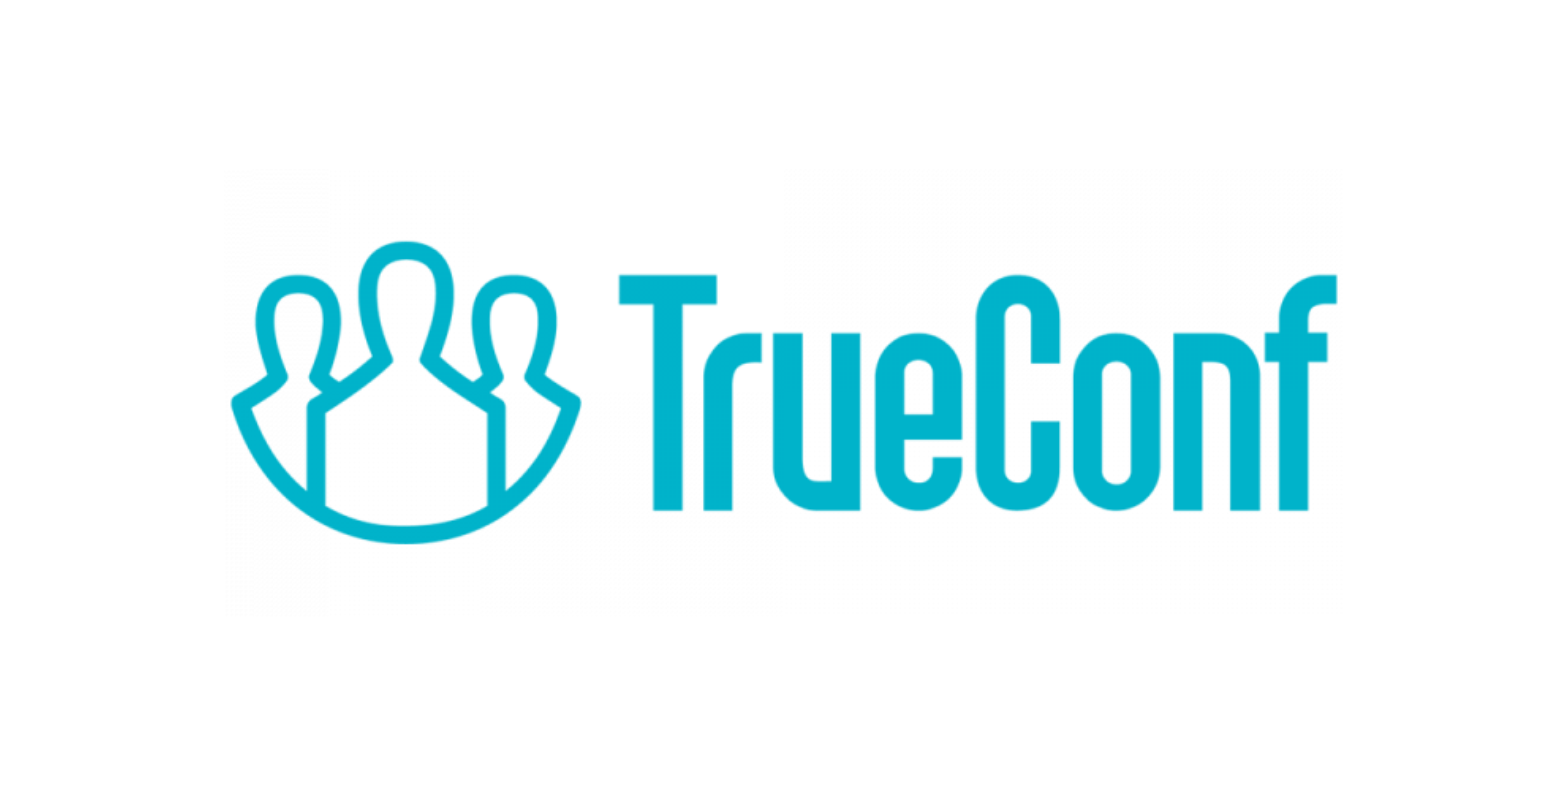 TrueConf Server Академическая лицензия 10-19 онлайн-пользователей